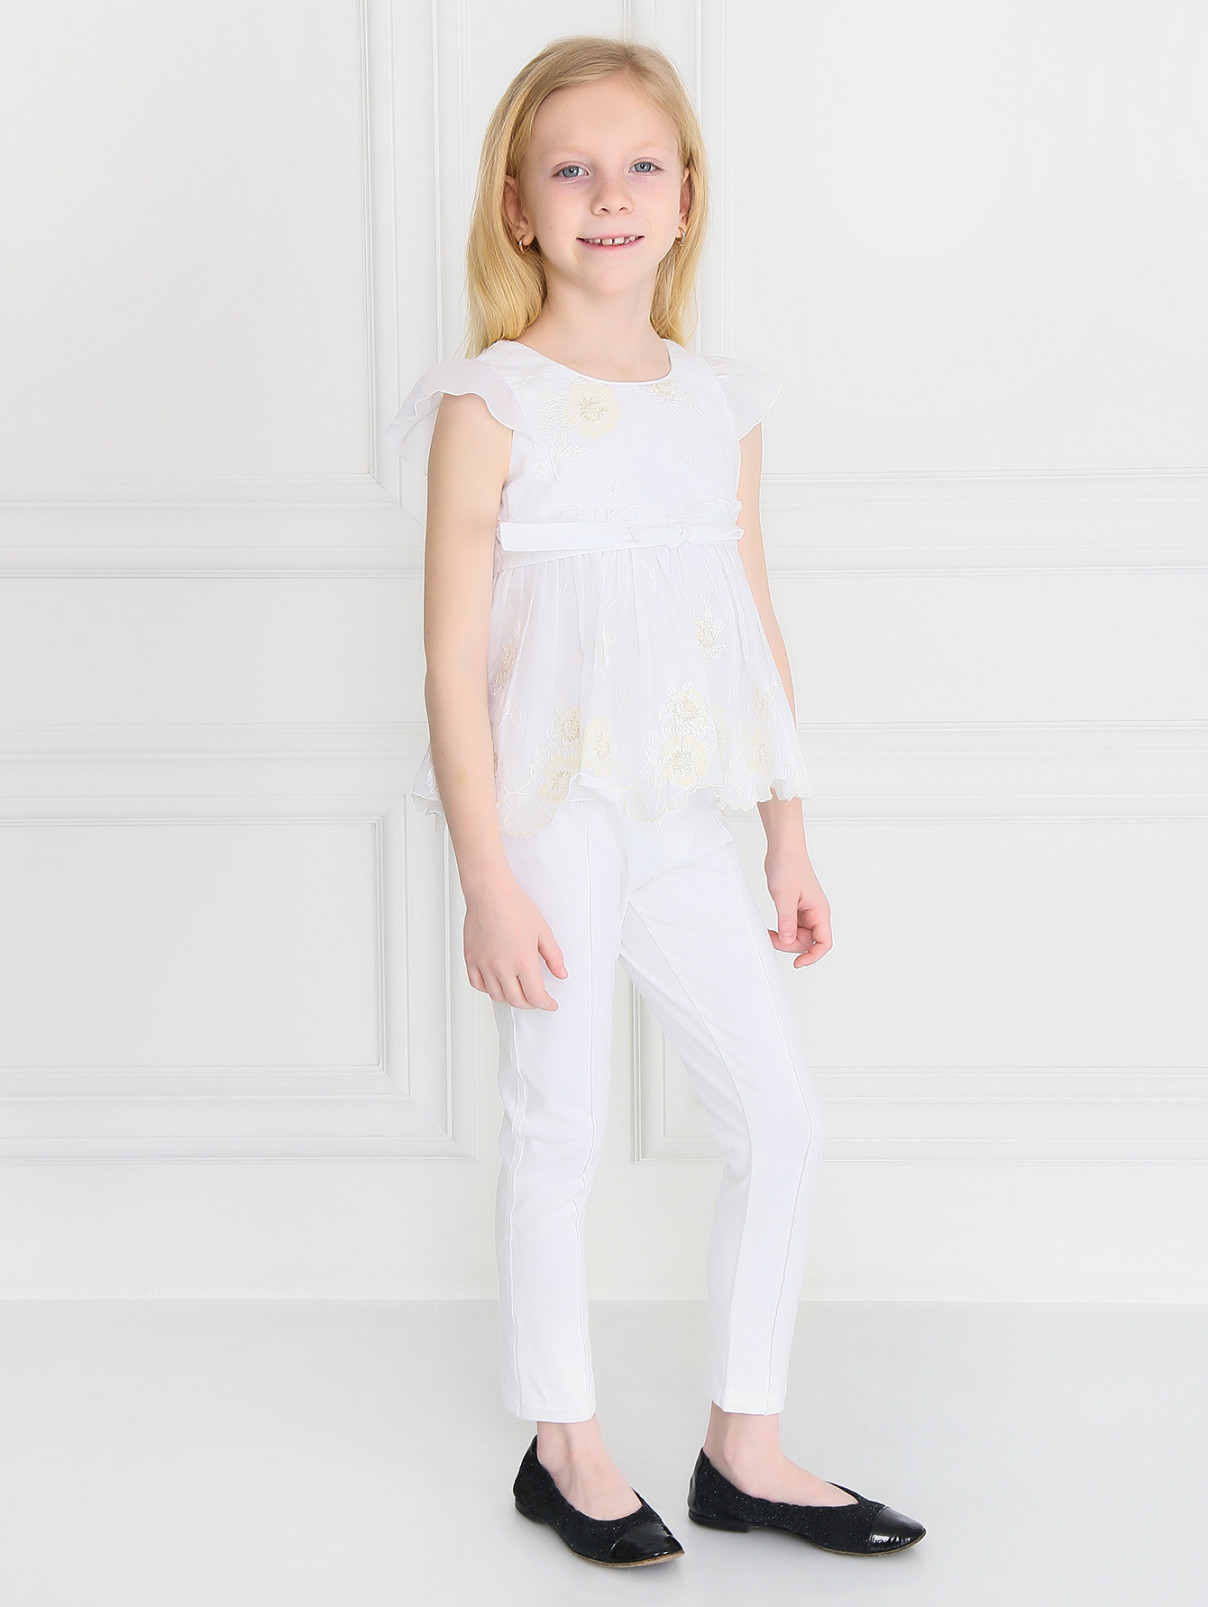 Трикотажные брюки на резинке Aletta  –  Модель Общий вид  – Цвет:  Белый